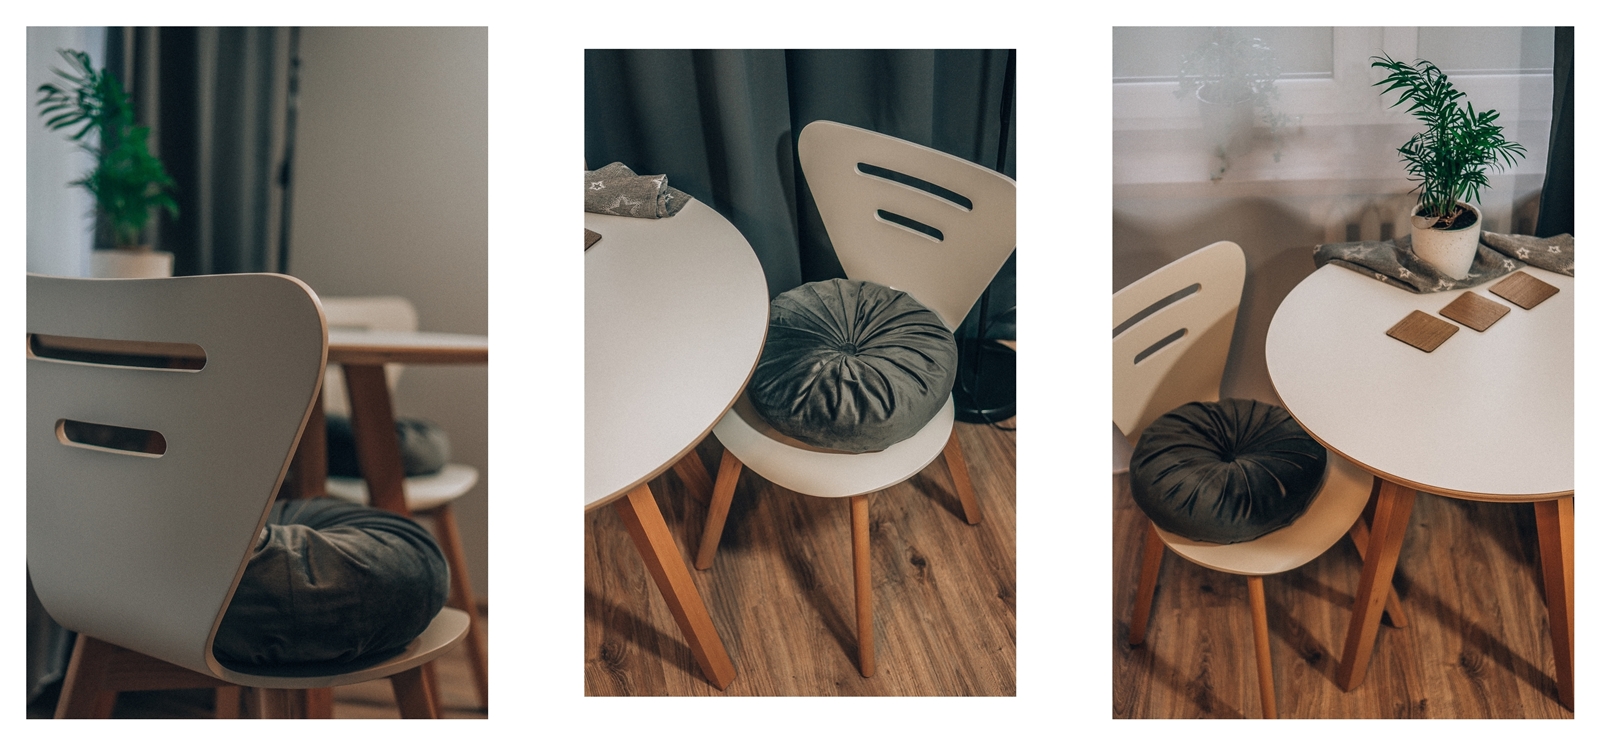 0 drewniany biały stół do jadalni, salonu i kuchni. Drewniane krzesła w stylu skandynawskim. Białe krzesła loftowe drewniane bez podłokietników z wysokim oparciem. Soldny stół dla 4 osób, solidne krzesła.